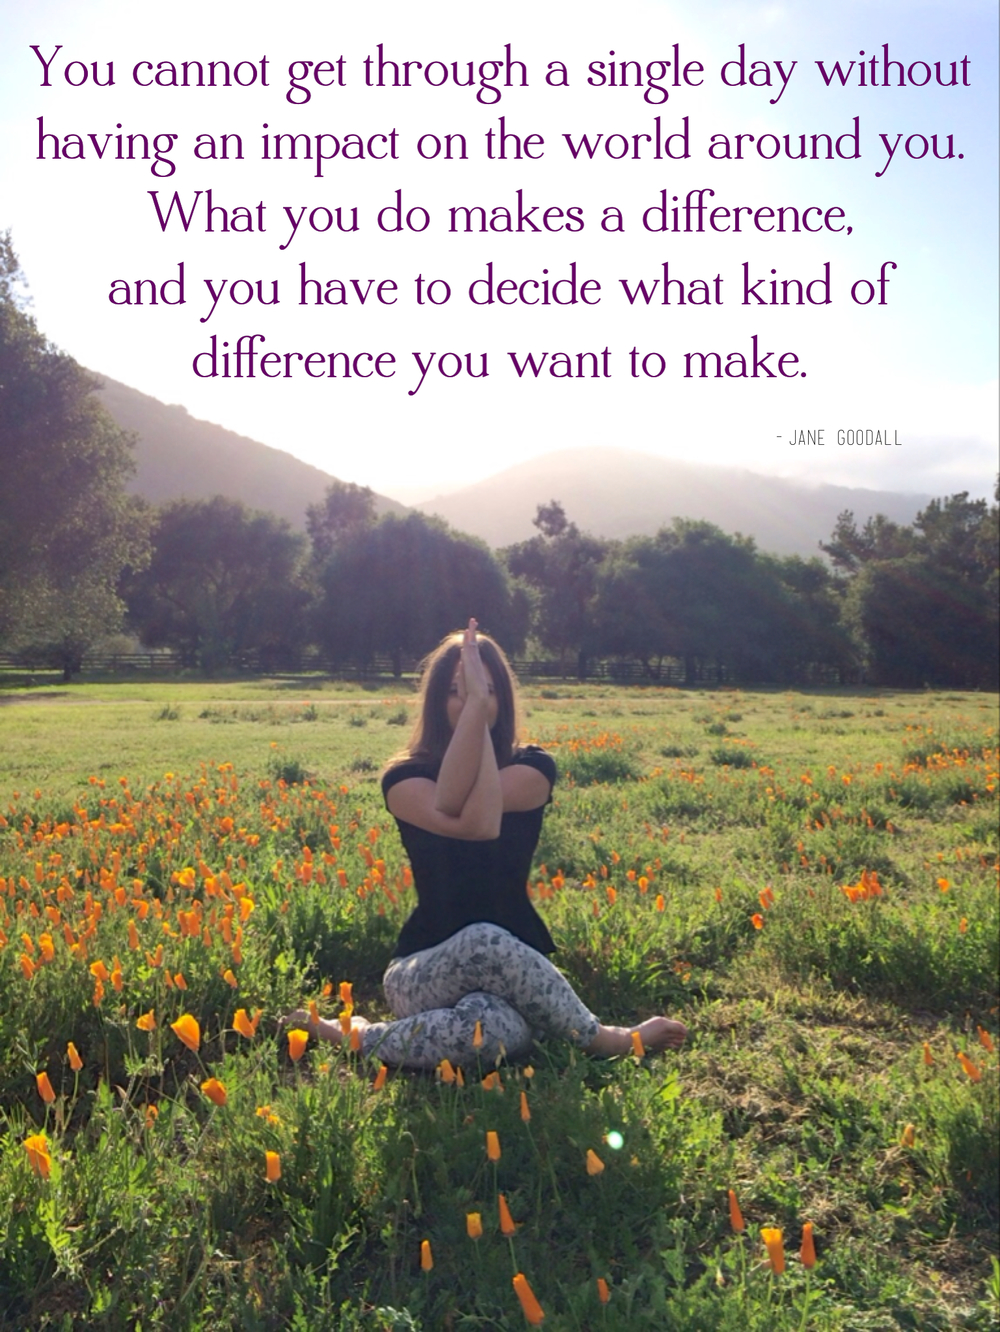 What you do makes a difference. via sarahdigrazia.com